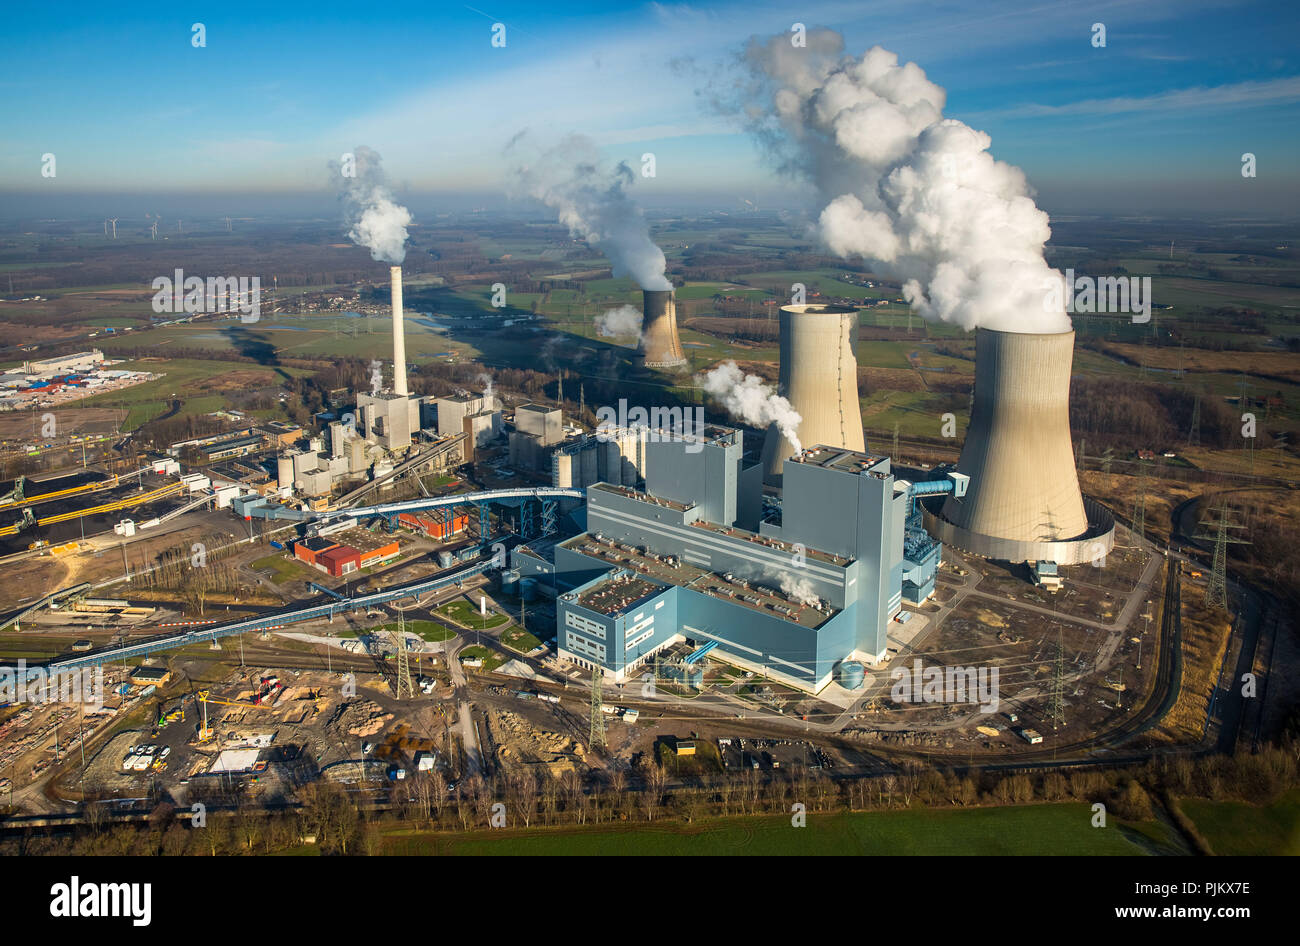 Westfalen power station RWE power, la planta de energía de carbón, la antigua planta de energía nuclear, Welver THTR Hamm Uentrop, área de Ruhr, Renania del Norte-Westfalia, Alemania Foto de stock